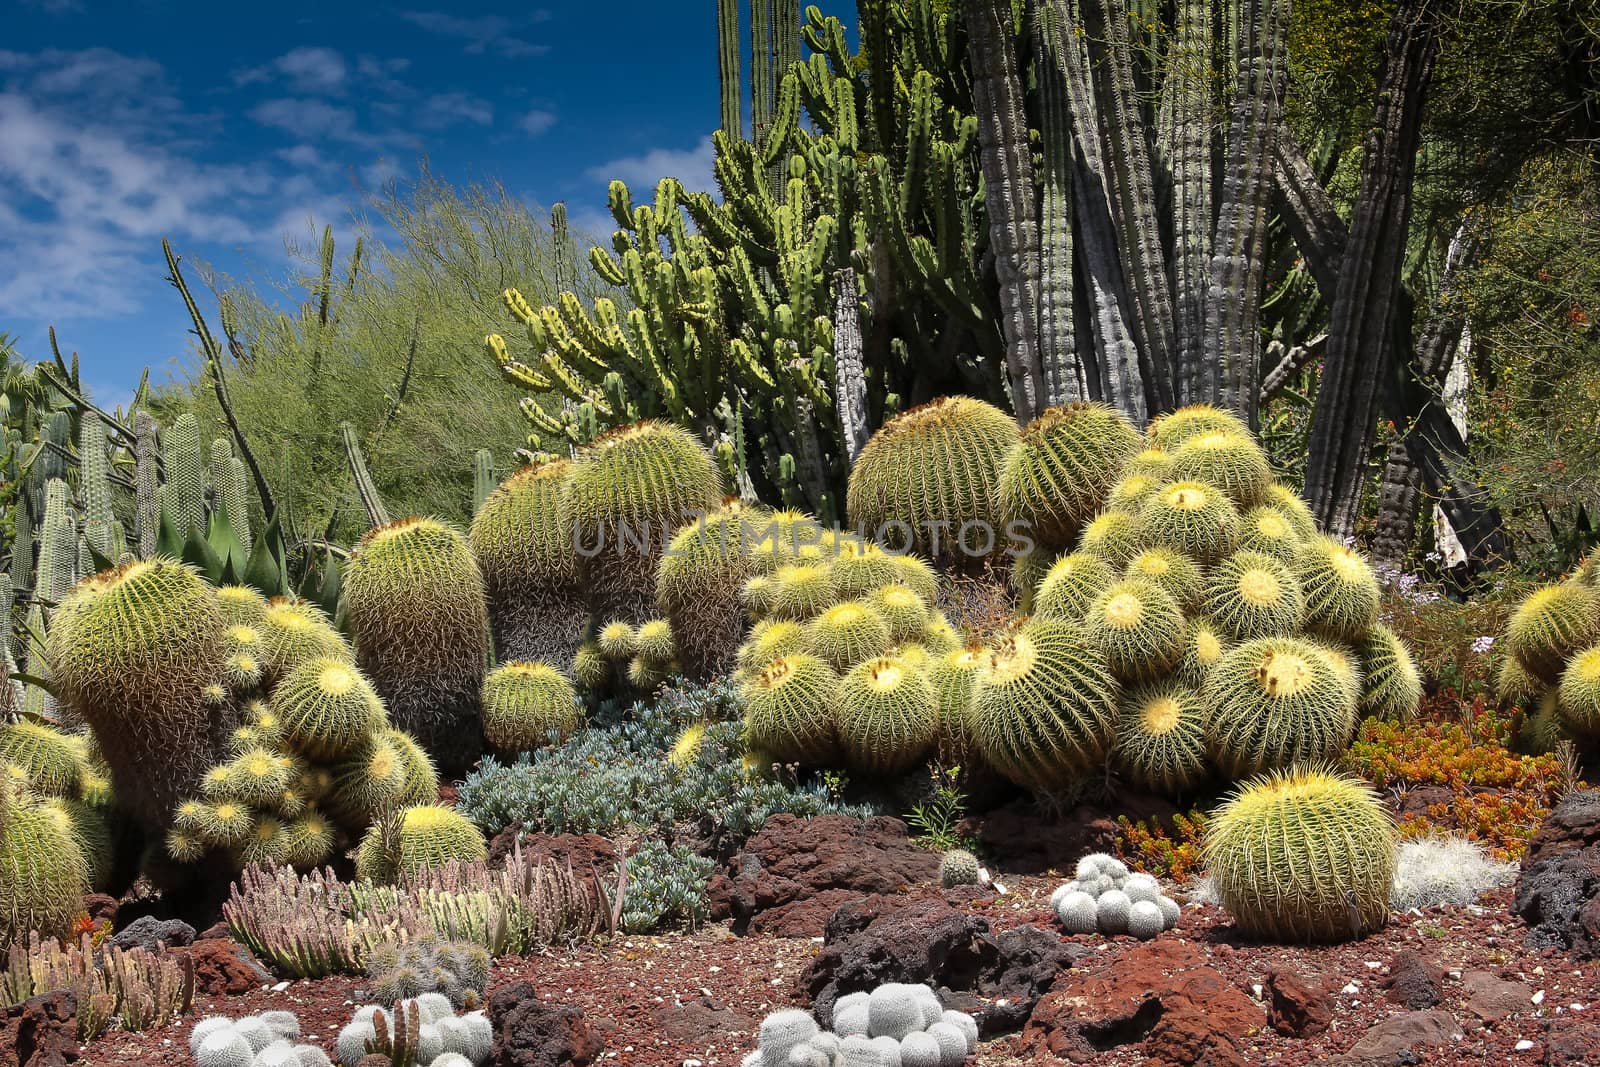 A desert garden of stunning cacti with cobalt blue sky.